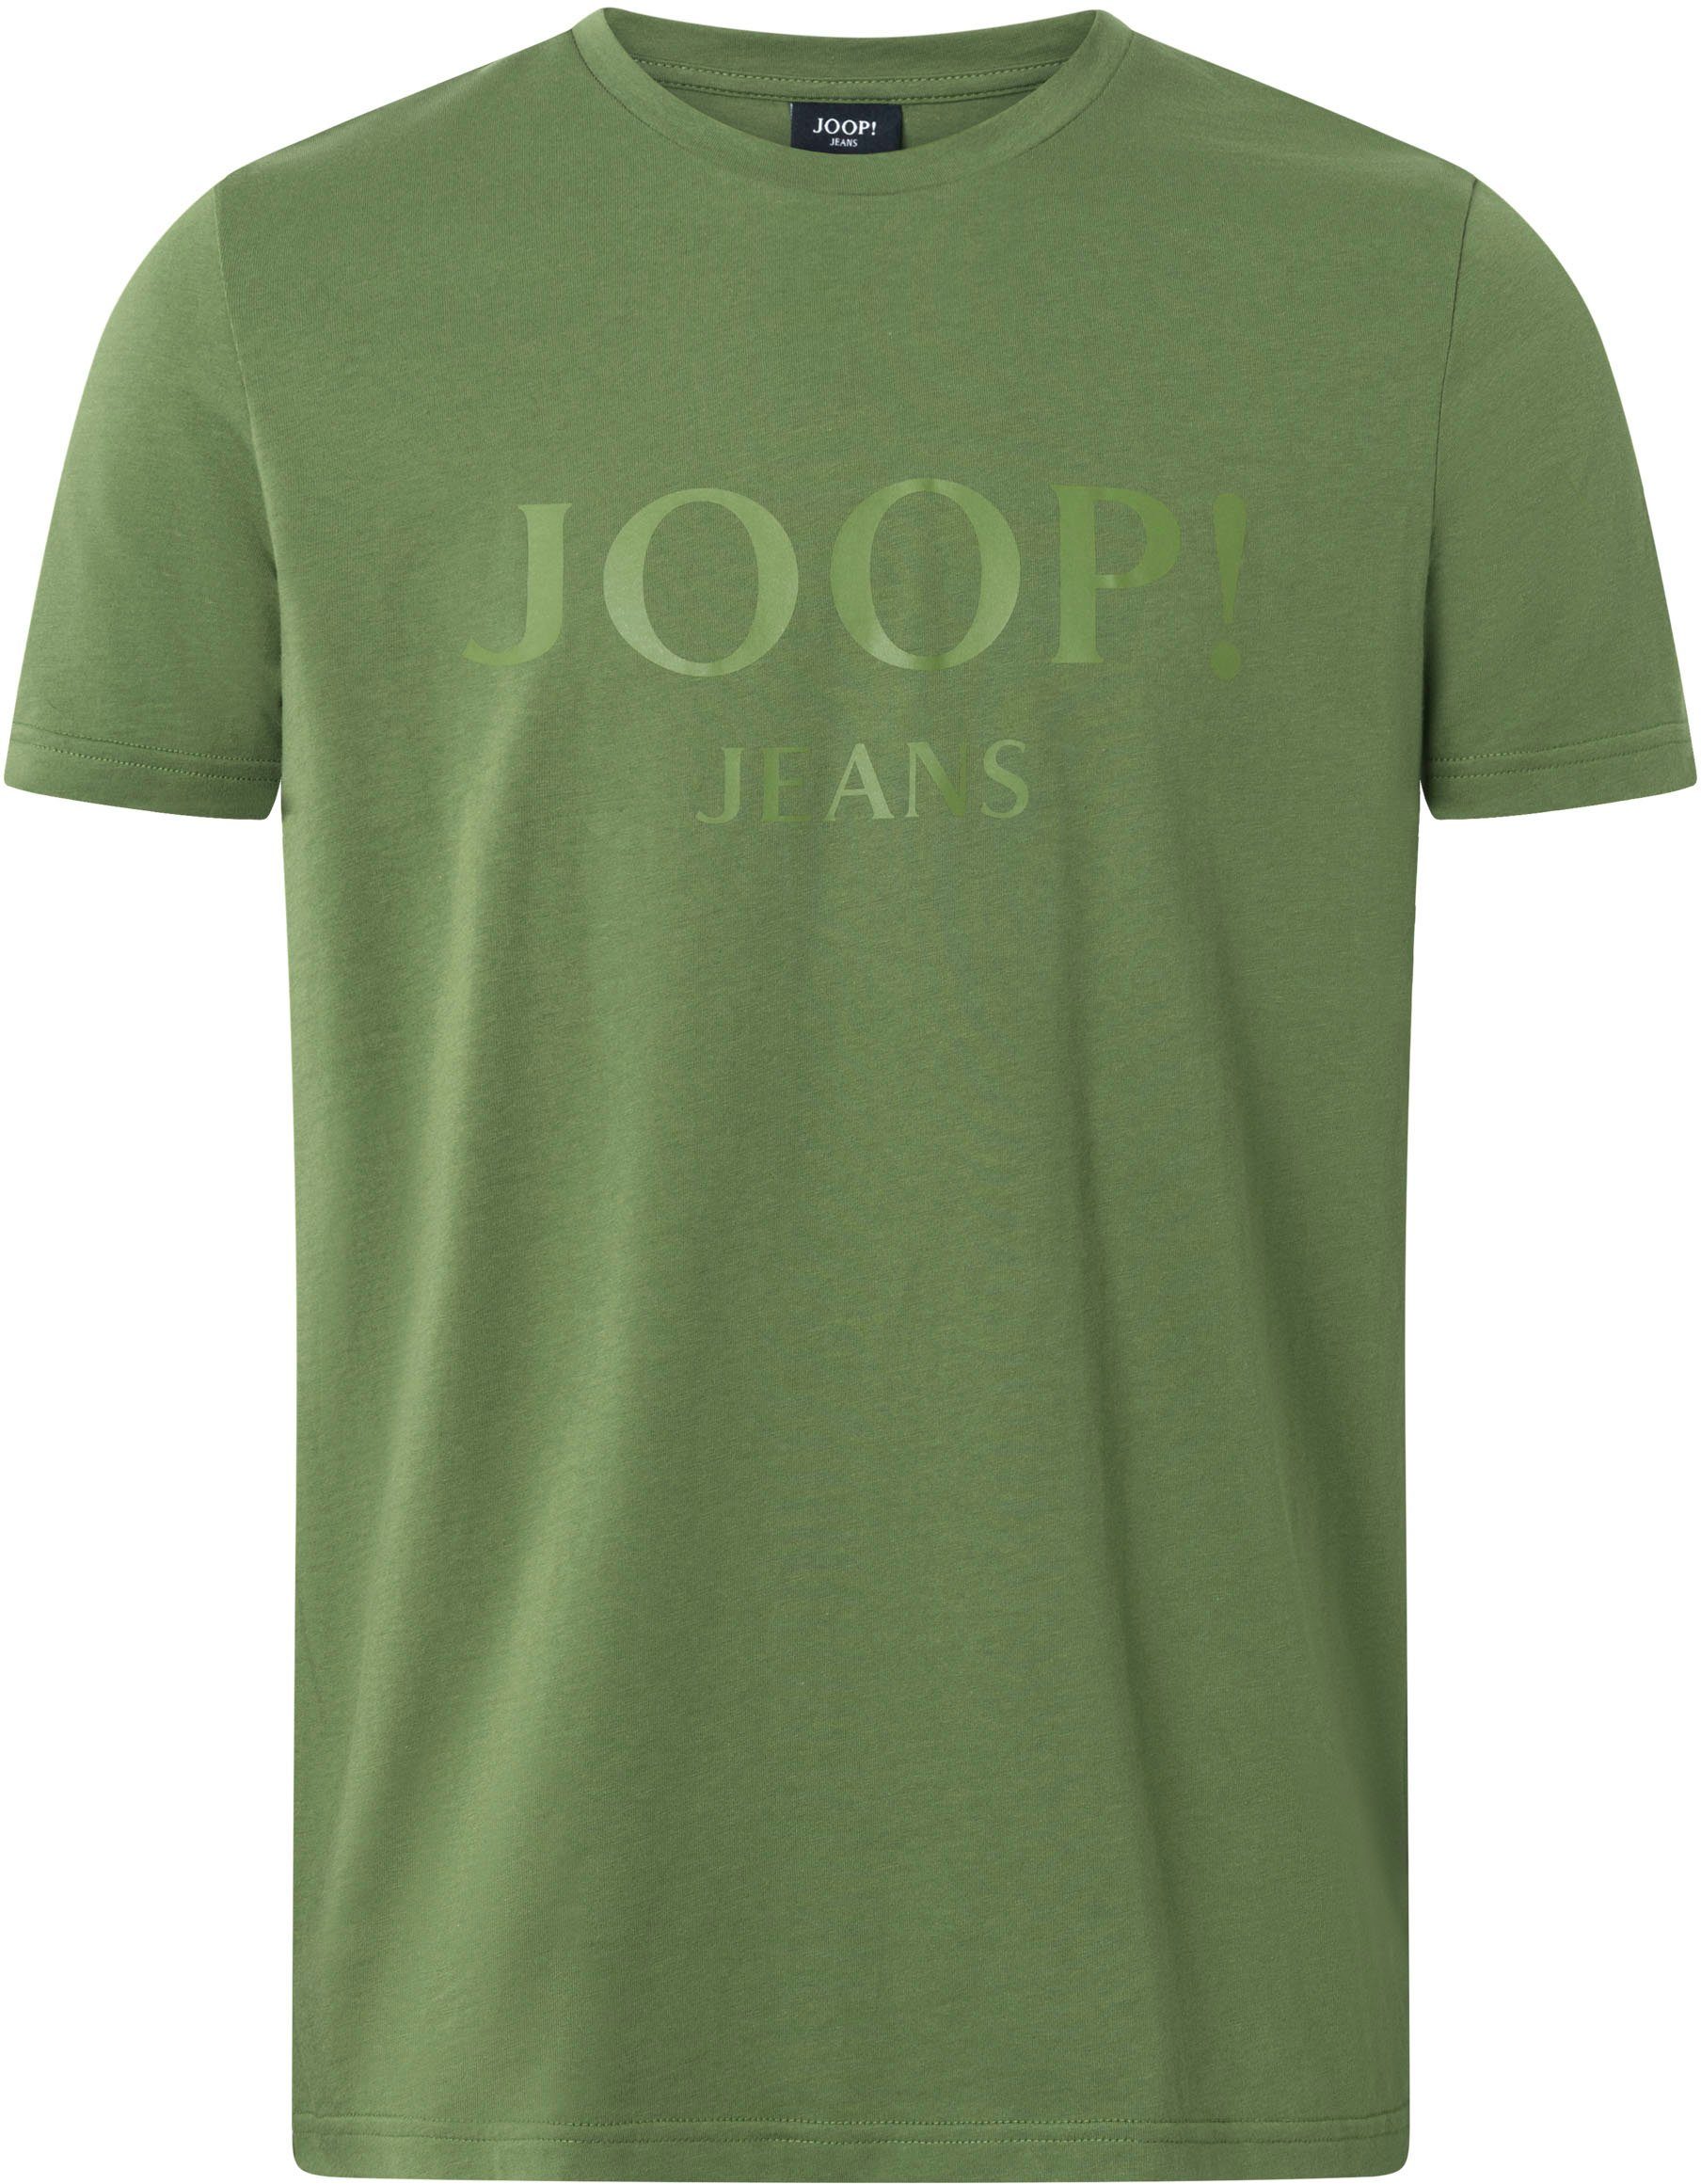 JJJ-09Alex Jeans mit Logo-Frontprint Rundhalsshirt Bright Joop Green